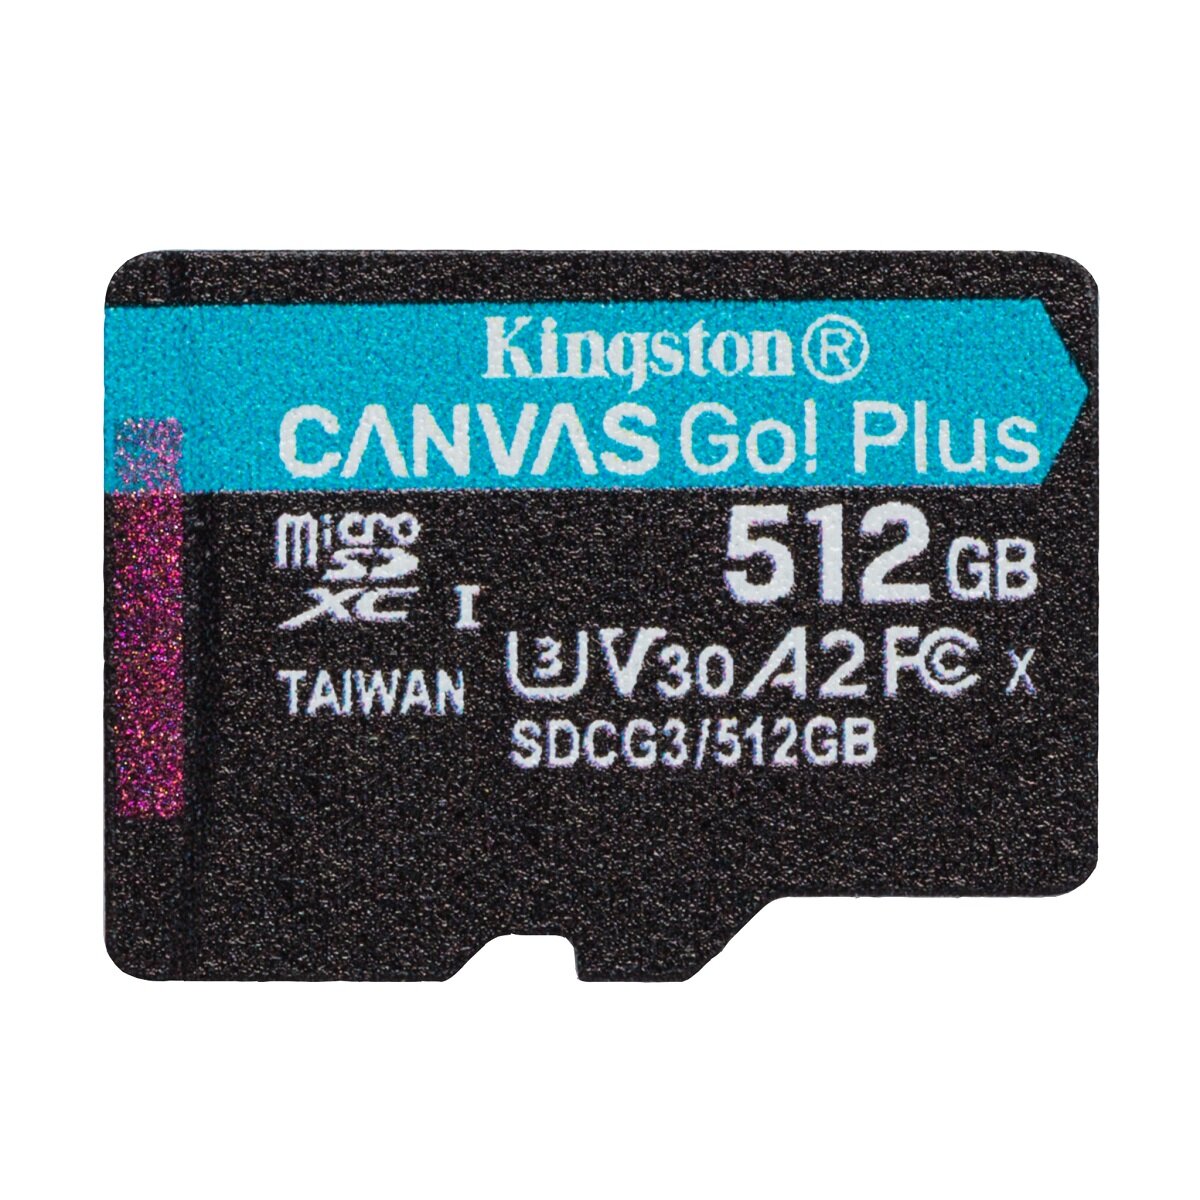 Karta pamięci Kingston Canvas Go! Plus MicroSD 512GB widok karty od przodu